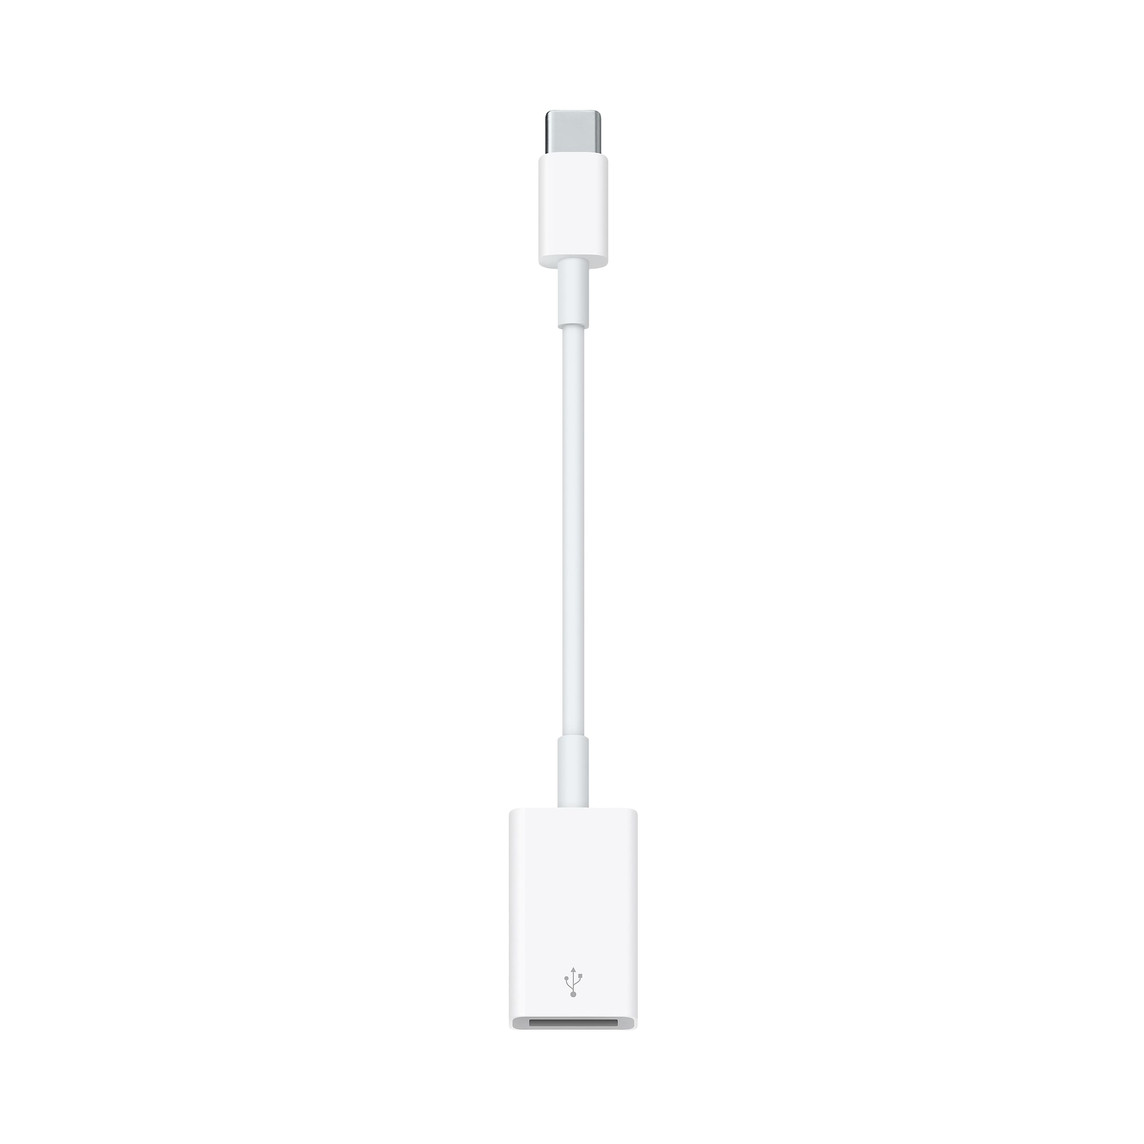 USB‑C/USB adaptérem připojíš k Macu s portem USB‑C nebo Thunderbolt 3 (USB‑C) iOS zařízení a standardní USB doplňky.